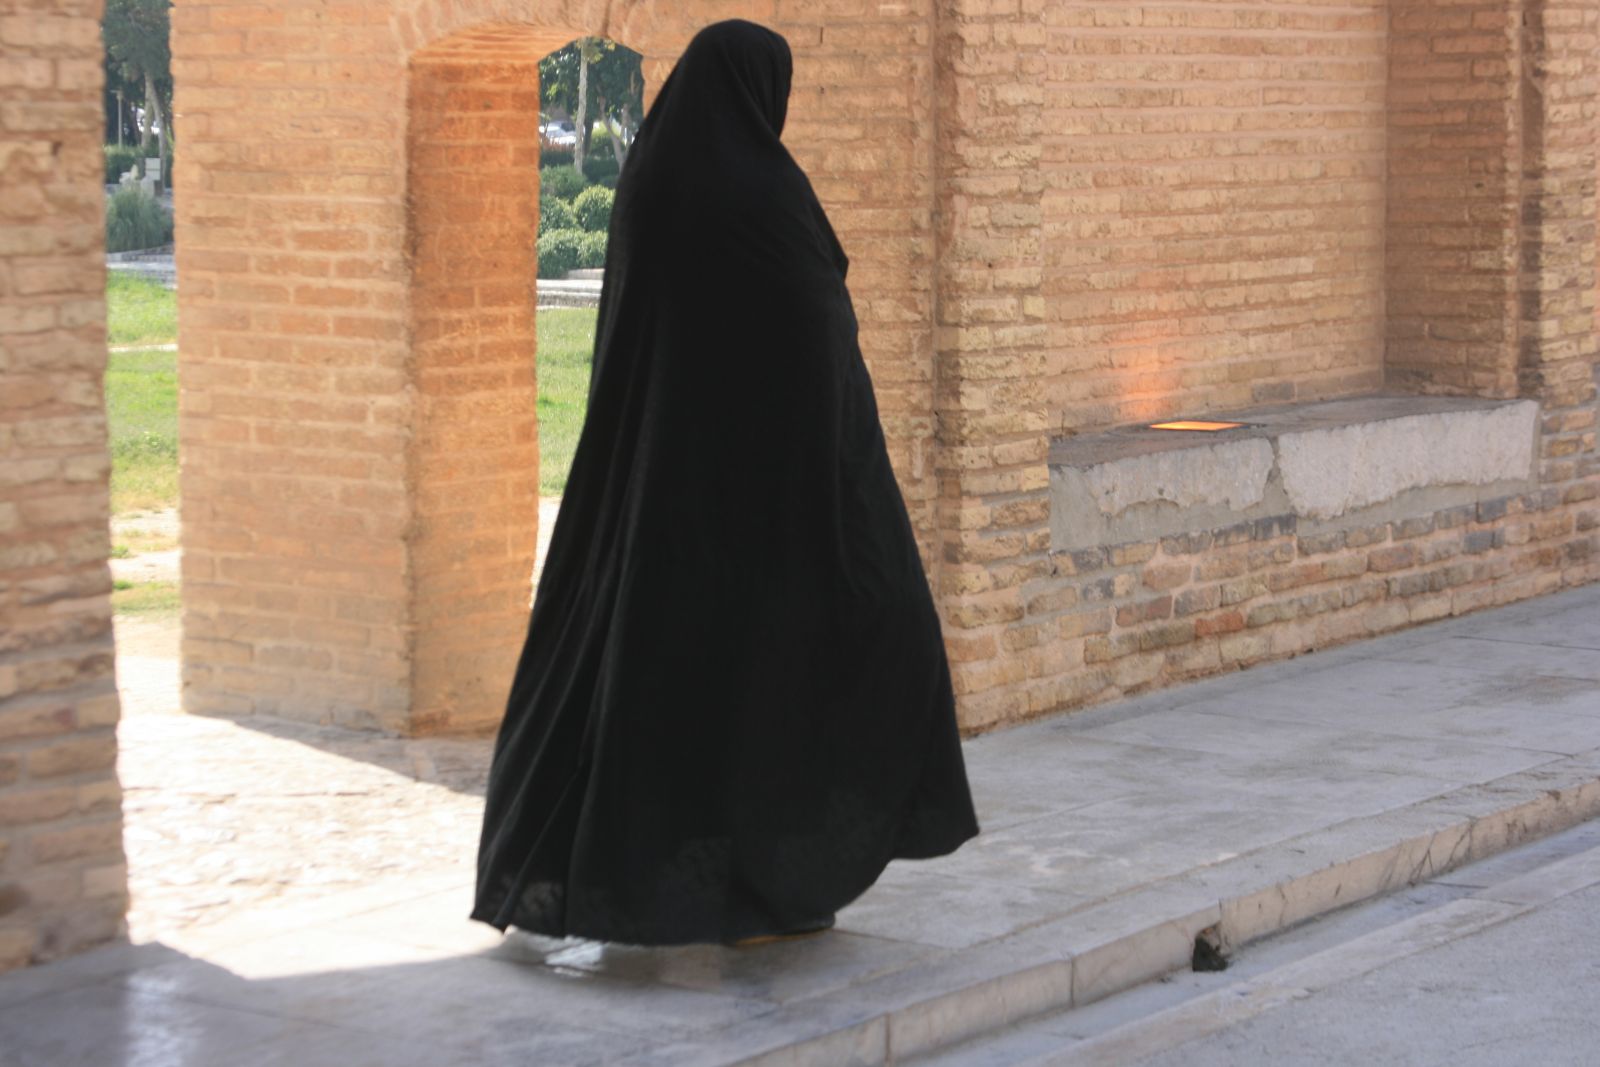 Muszlim nők ruhatára: burka, csador, kendő és társaik. Országok szerint is vannak különbségek, nem csak a ruhákat, de a színeket illetően is. Amikor muszlim nőkről van szó, a legtöbben egyből a csadorra asszociálnak, pedig a csador egyáltalán nem széleskörben elterjedt ruhadarab az iszlám világban. A szó maga perzsa eredetű, ebből is lehet következtetni, hogy főként Iránban használatos. Szabását tekintve igen egyszerű: egy félkör alakú lepel, aminek sem ujja, sem nyaka, sem gombja nincs; viselője magára tekeri, maga előtt összefogja, és egyfajta köpenyként használja akármilyen lengébb öltözetének eltakarására.